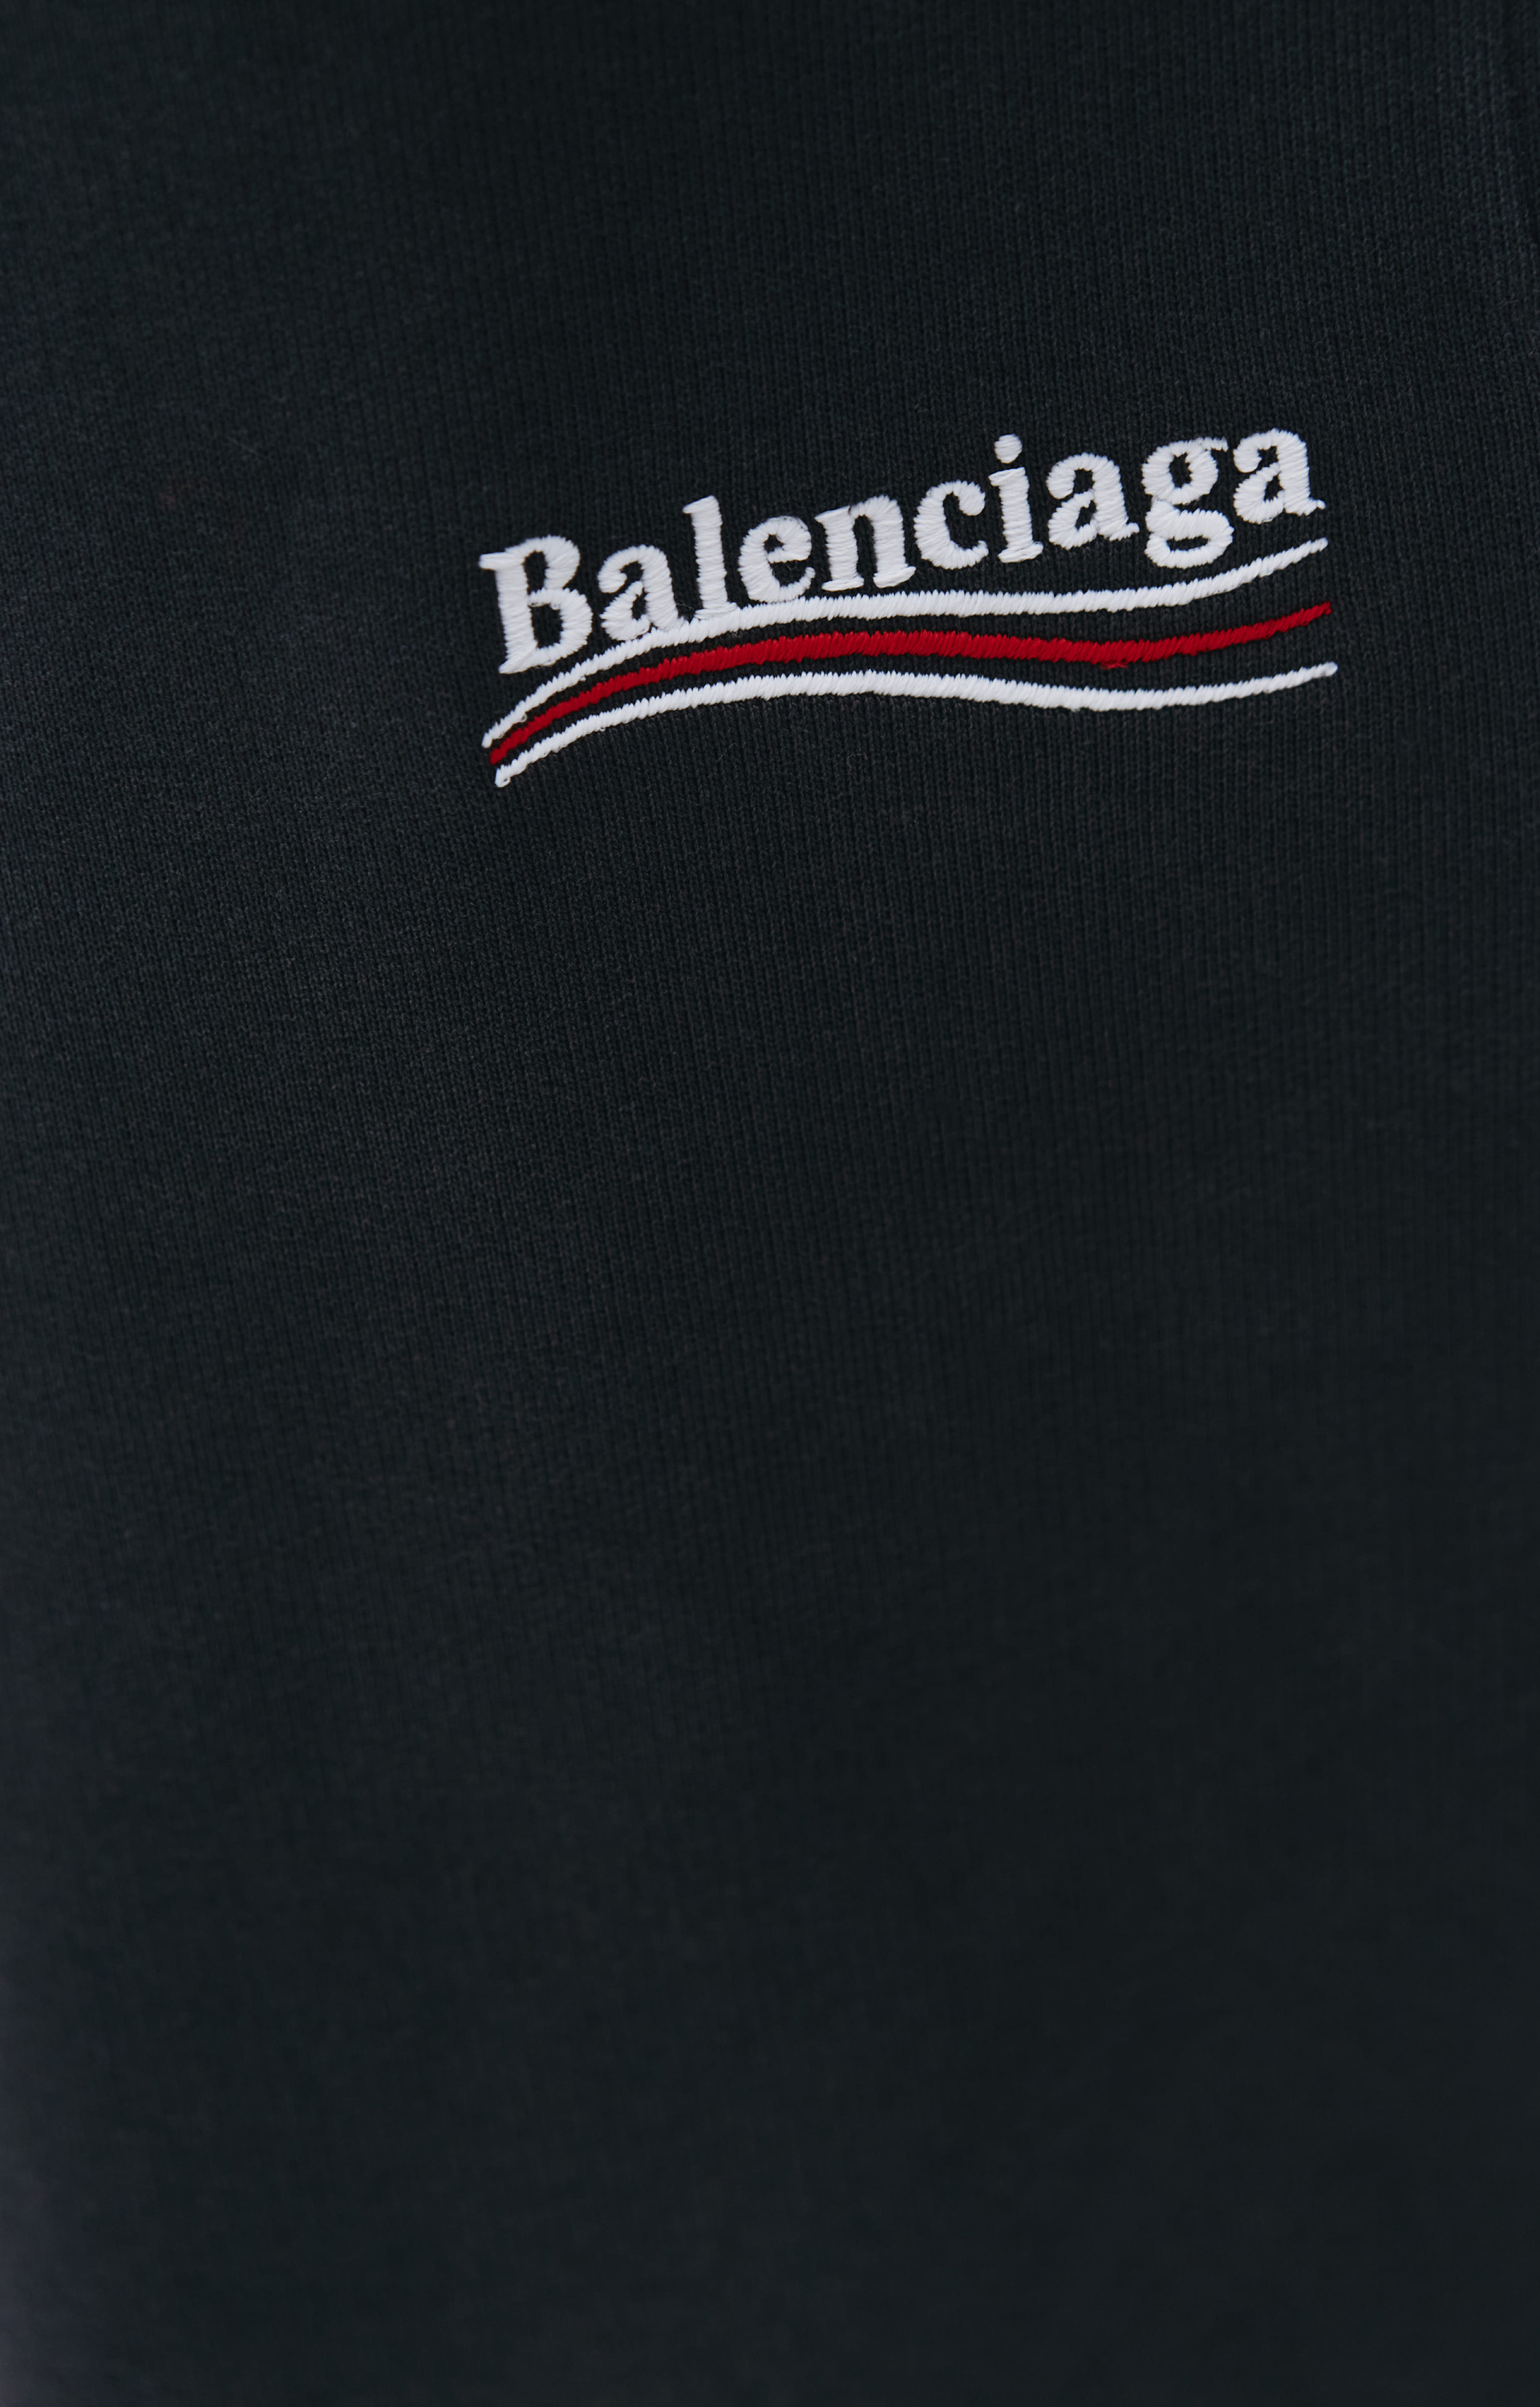 Balenciaga Fleece Jogging Pants